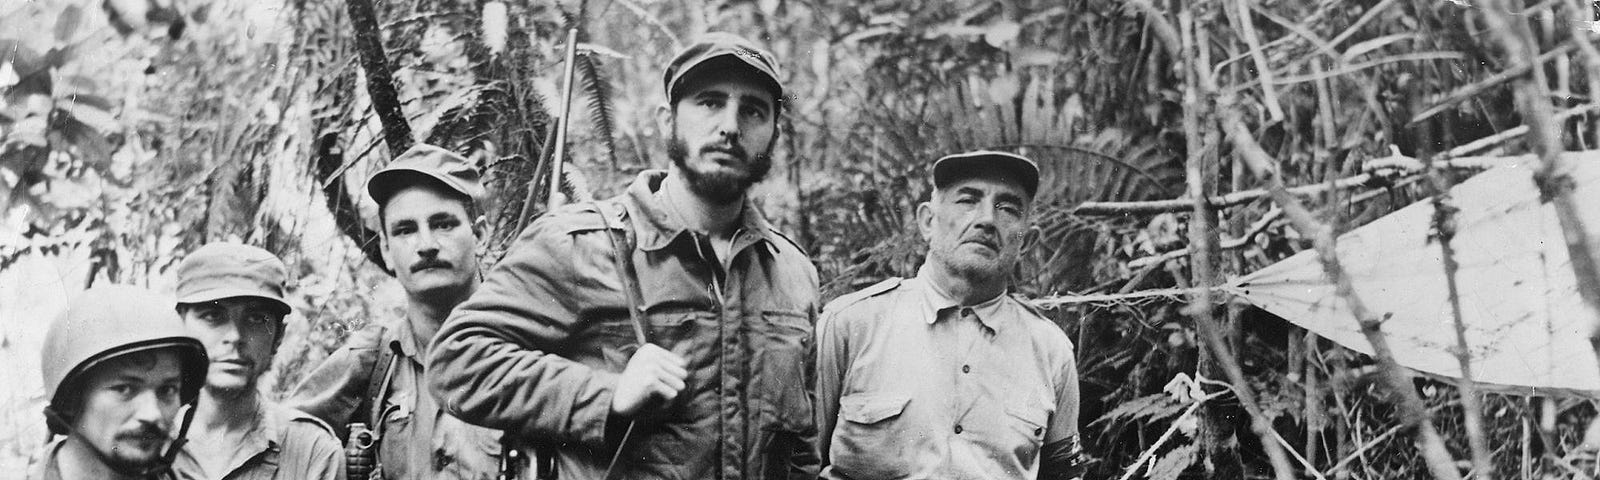 Castro and company in Cuba